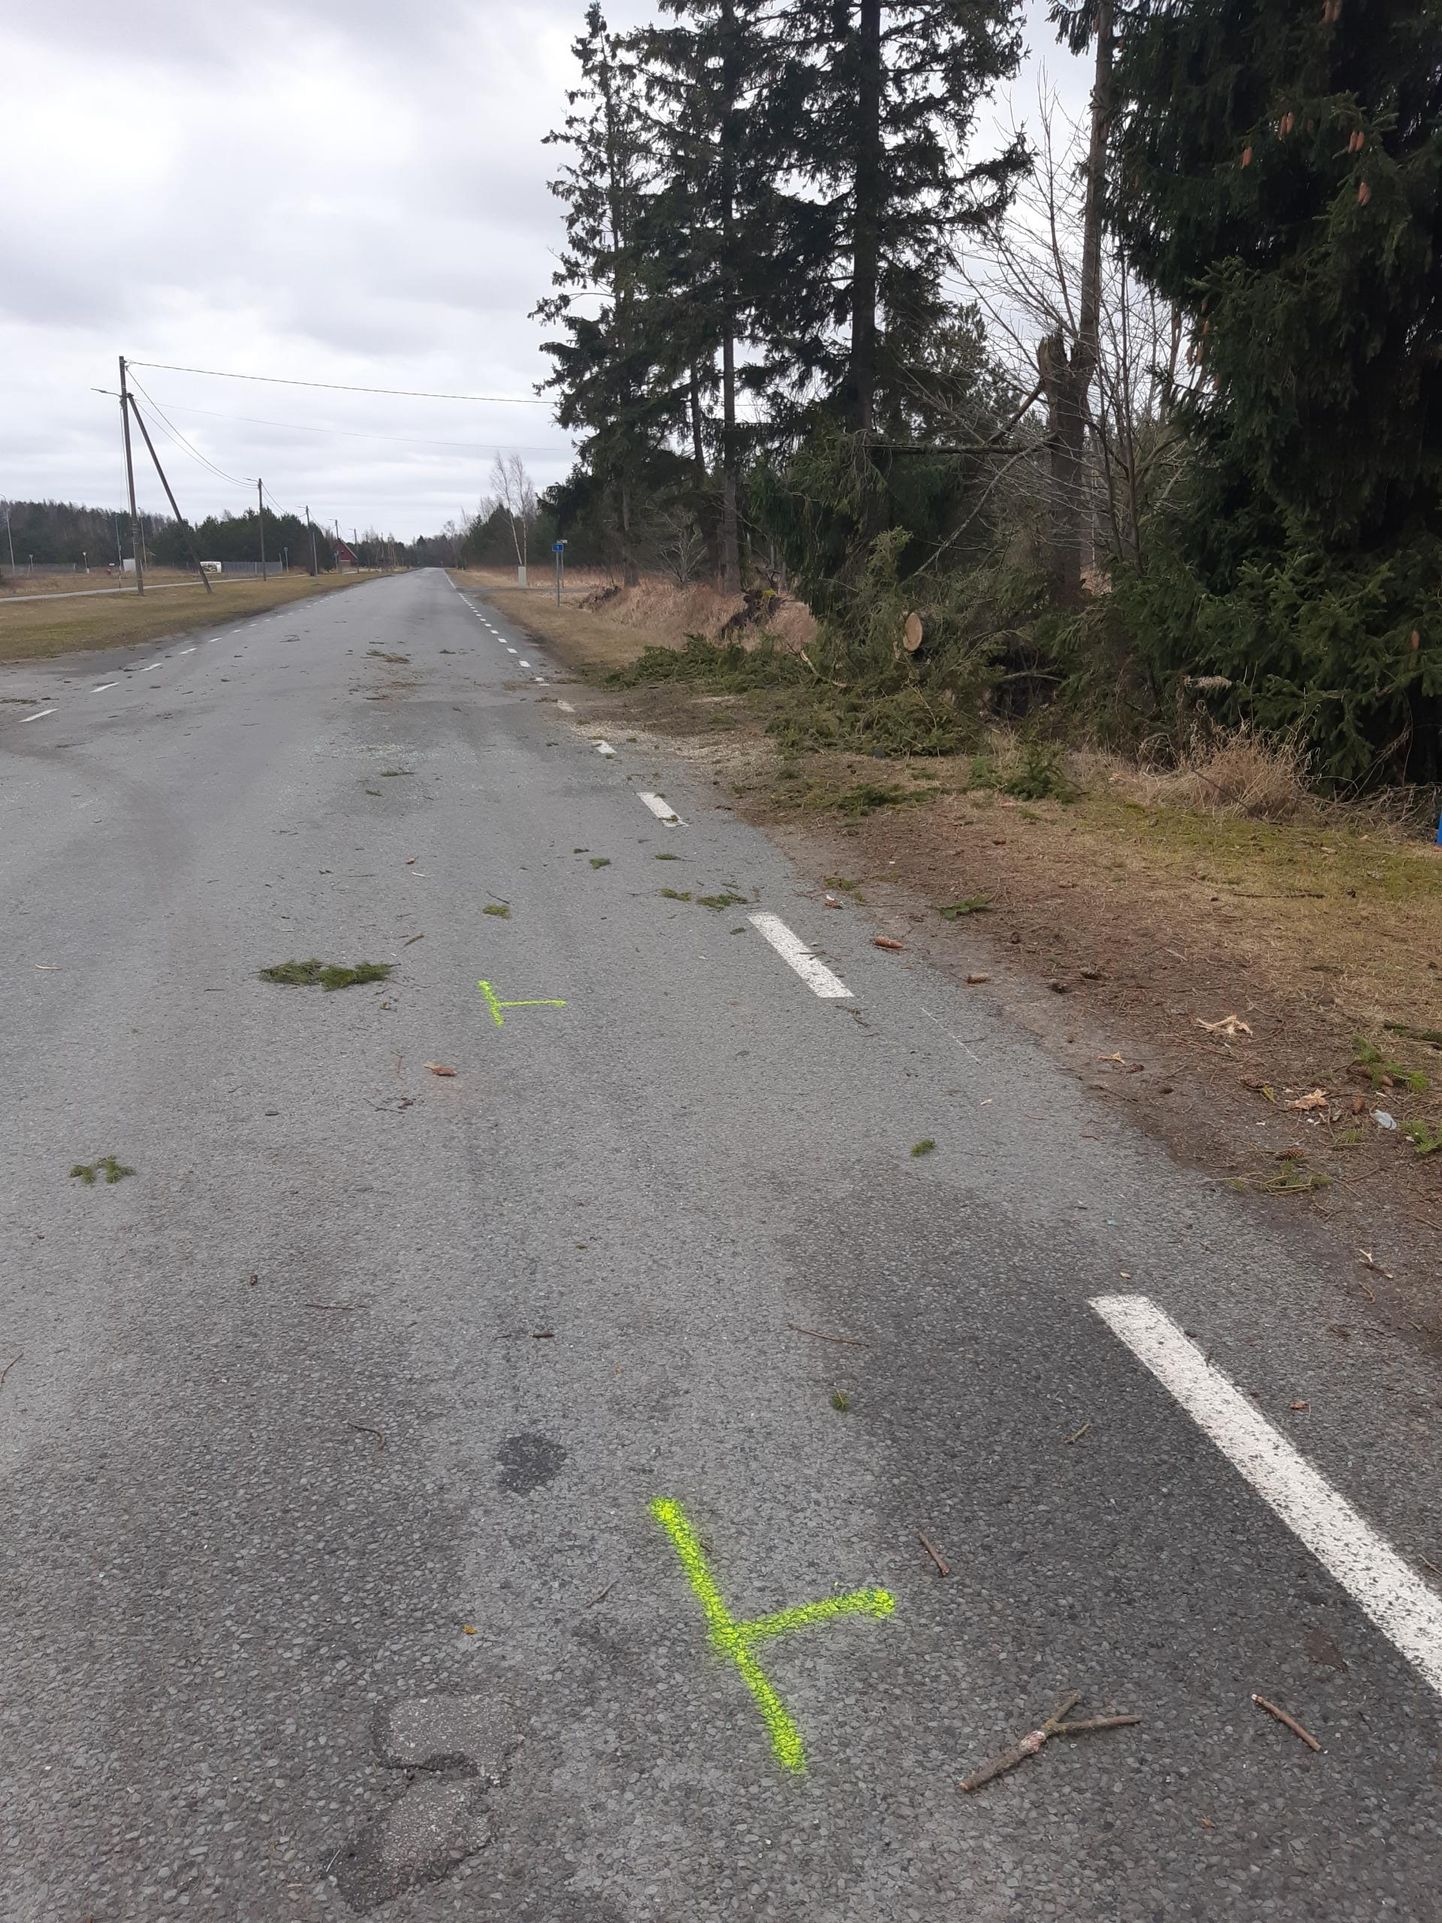 Uulu külas Soometsa teel põhjustas teele langenud puu liiklusõnnetuse. Pildi tegemise ajaks olid päästjad puu teelt juba eemaldanud.